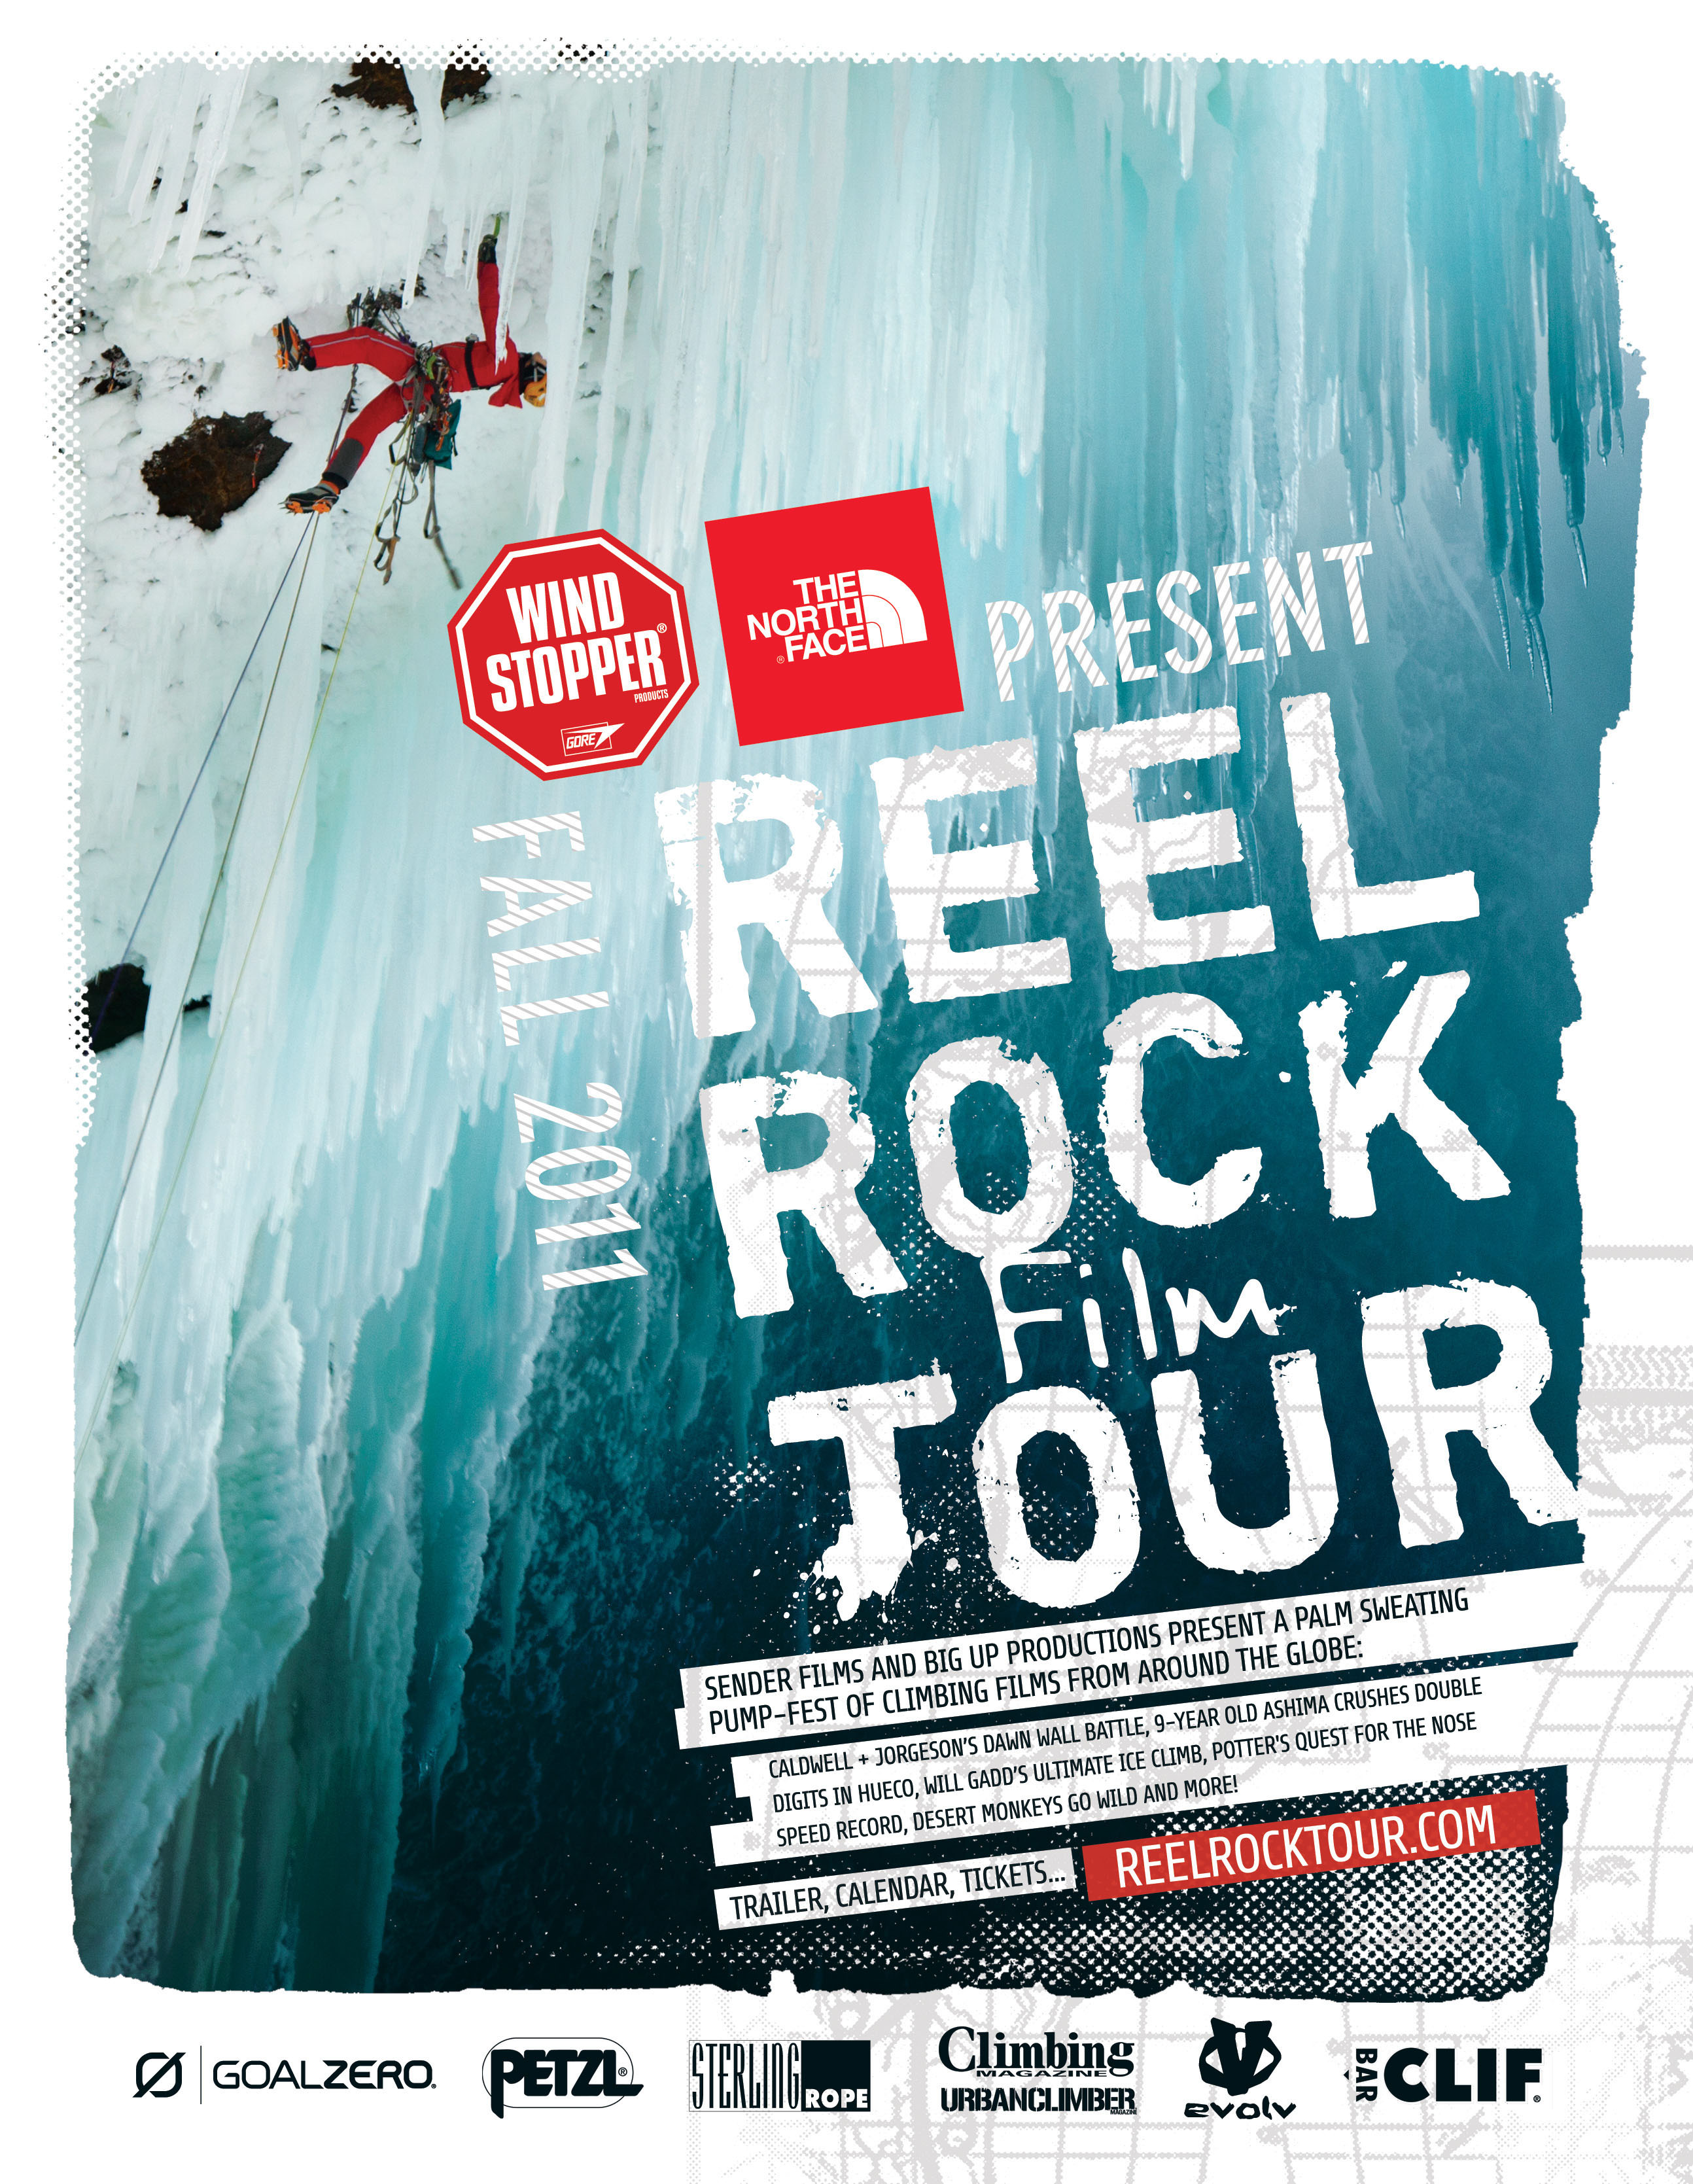 Reel Rock 2011 poster. Credit: Sender Films,  Shot on 2012-02-29 Photo taken.Licensed under: Public Domain.